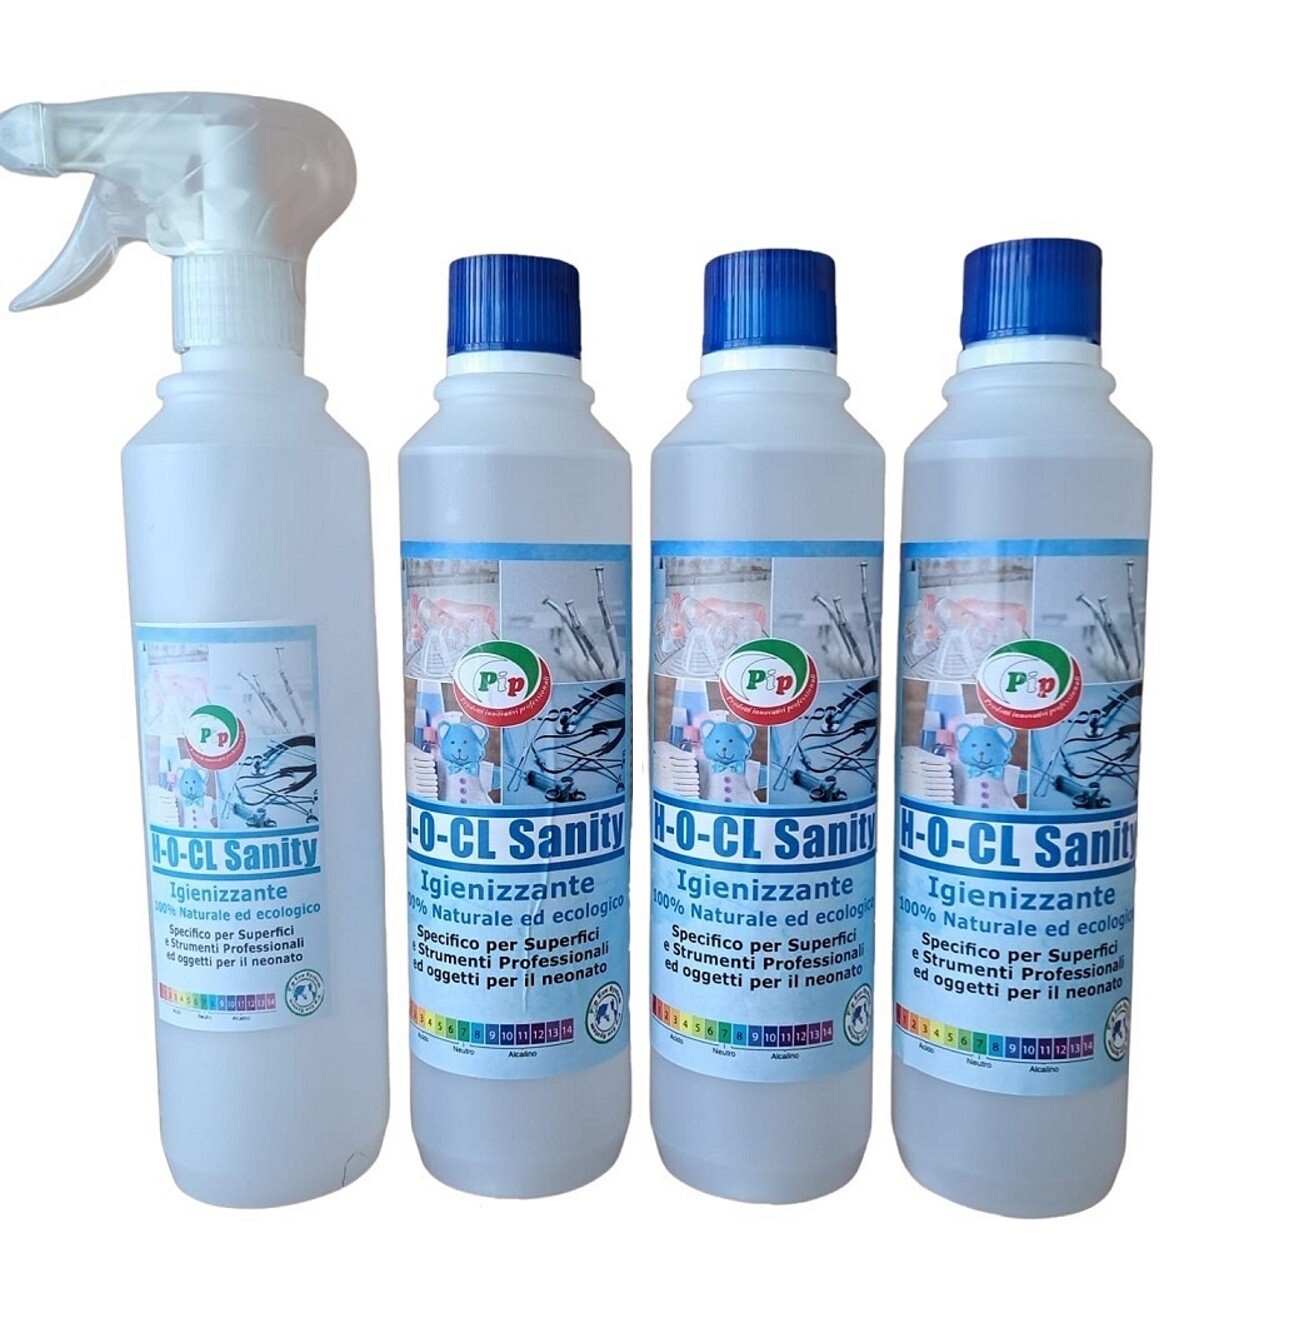 PIP Detergente Igienizzante 100% Naturale ed Ecologico Superconcetrato H-O-CL Sanity, Kit 3FL.da ml.500 + Vapo, Specifico per Superfici, Strumenti Professionali Medici ed Oggetti per il Neonato.